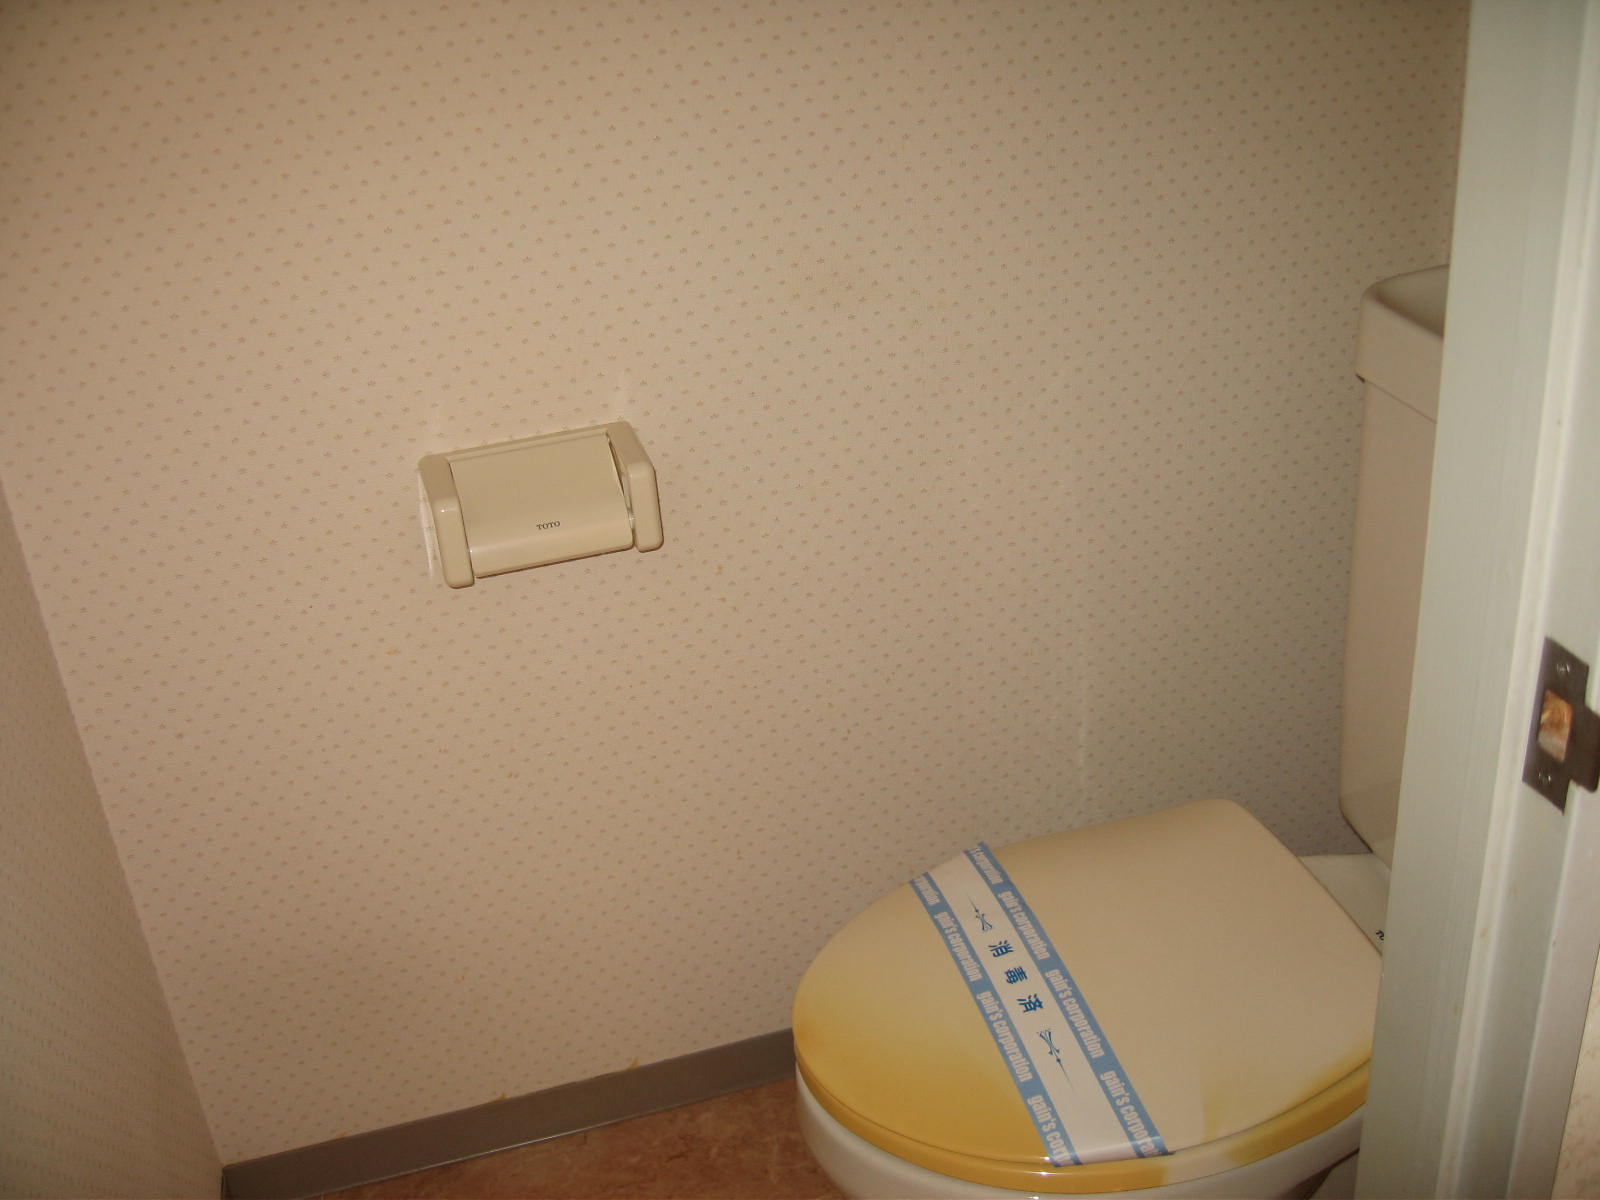 Toilet. Western-style flush toilet